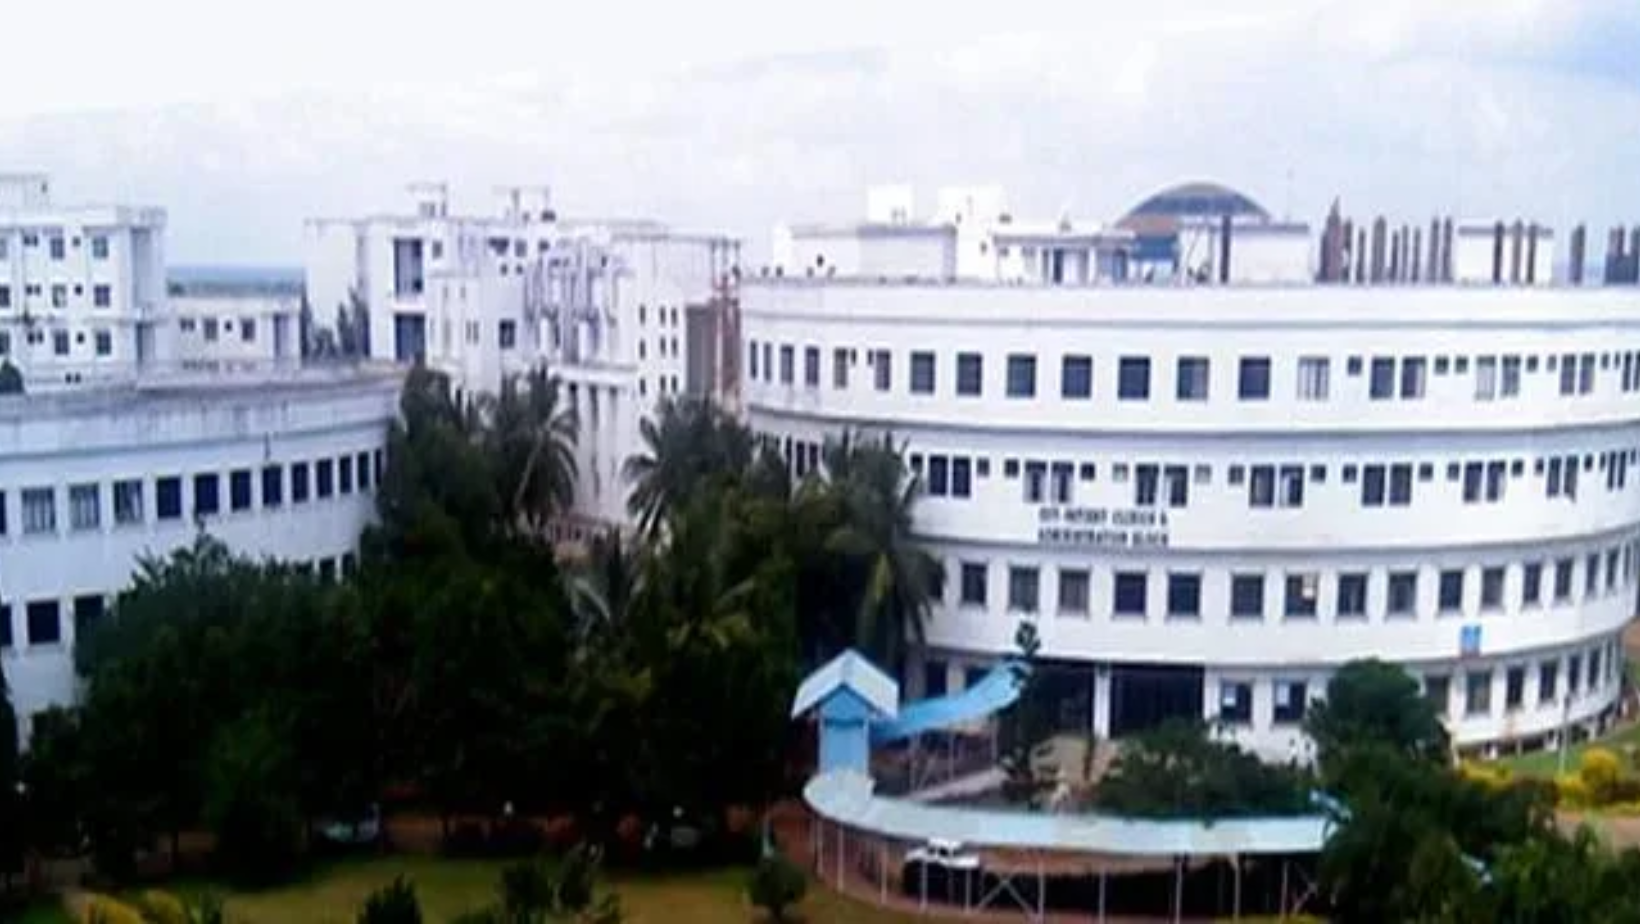 Pondicherry Institute of Medical Sciences (PIMS)